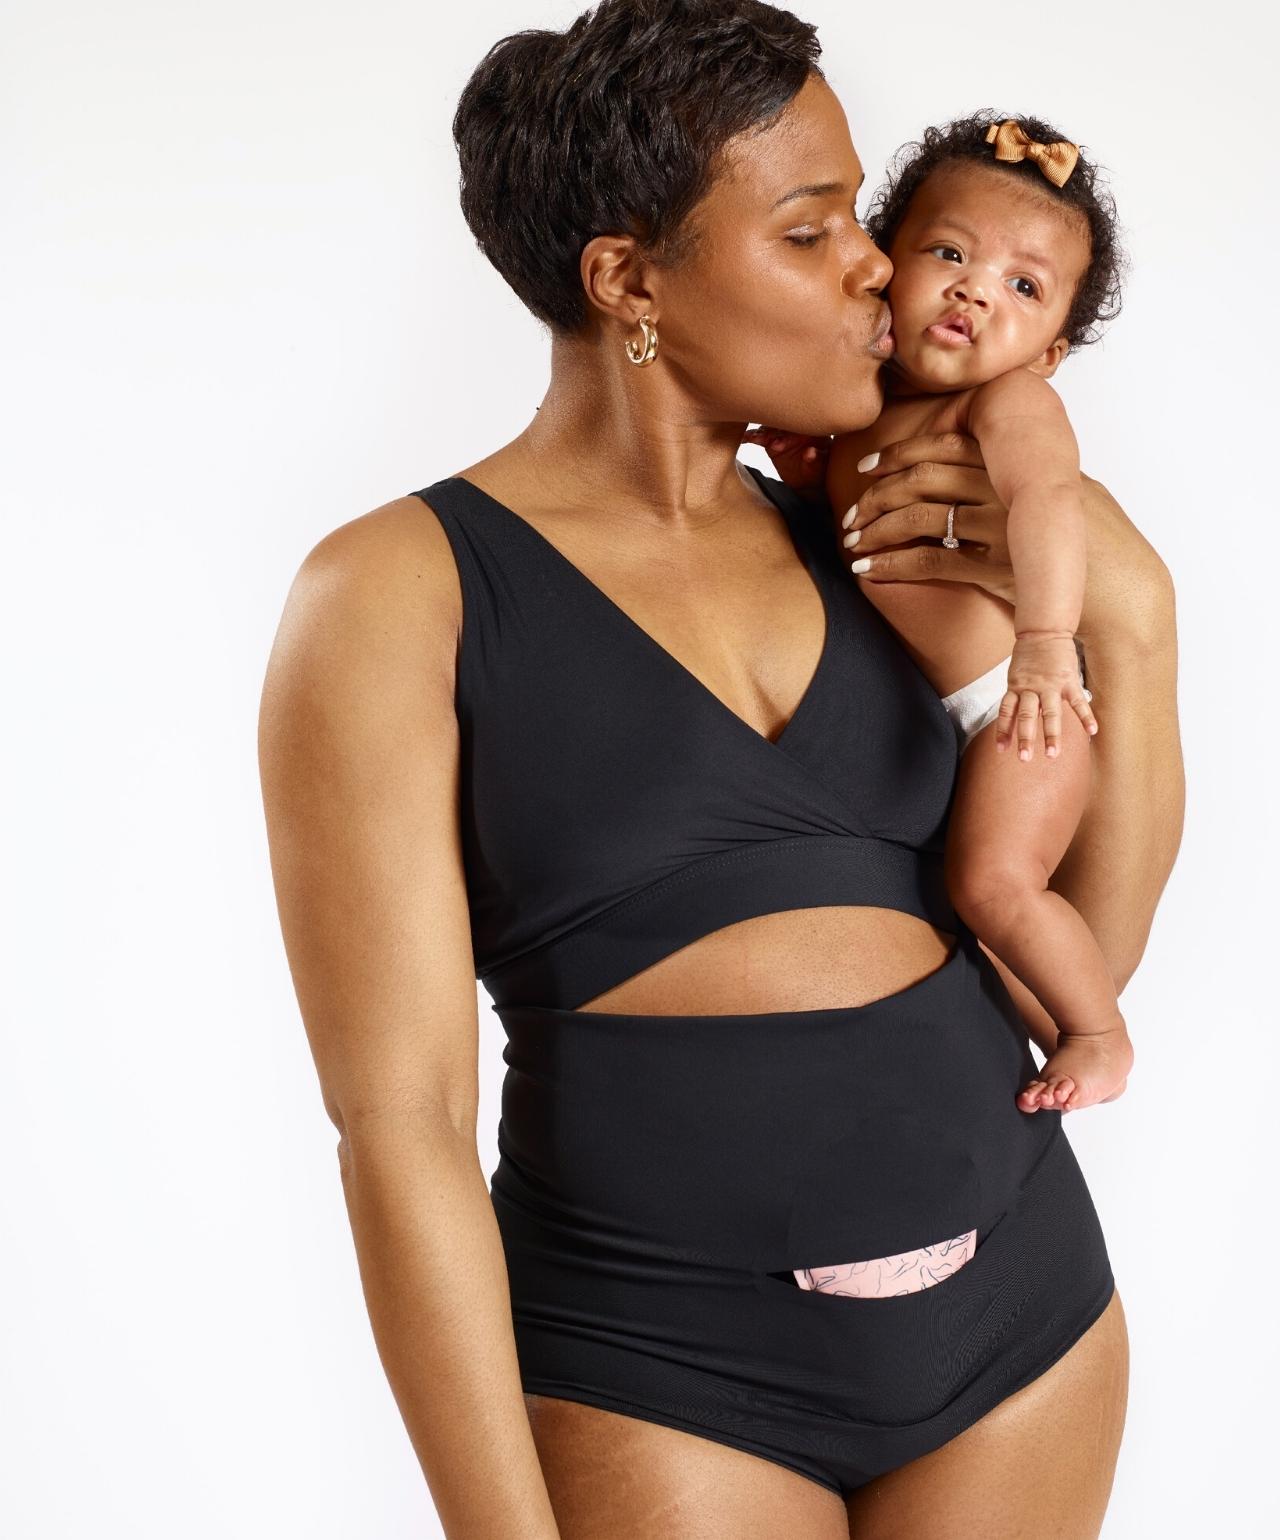 Woman in Nyssa FourthWear postpartum bralette and underwear, holding baby